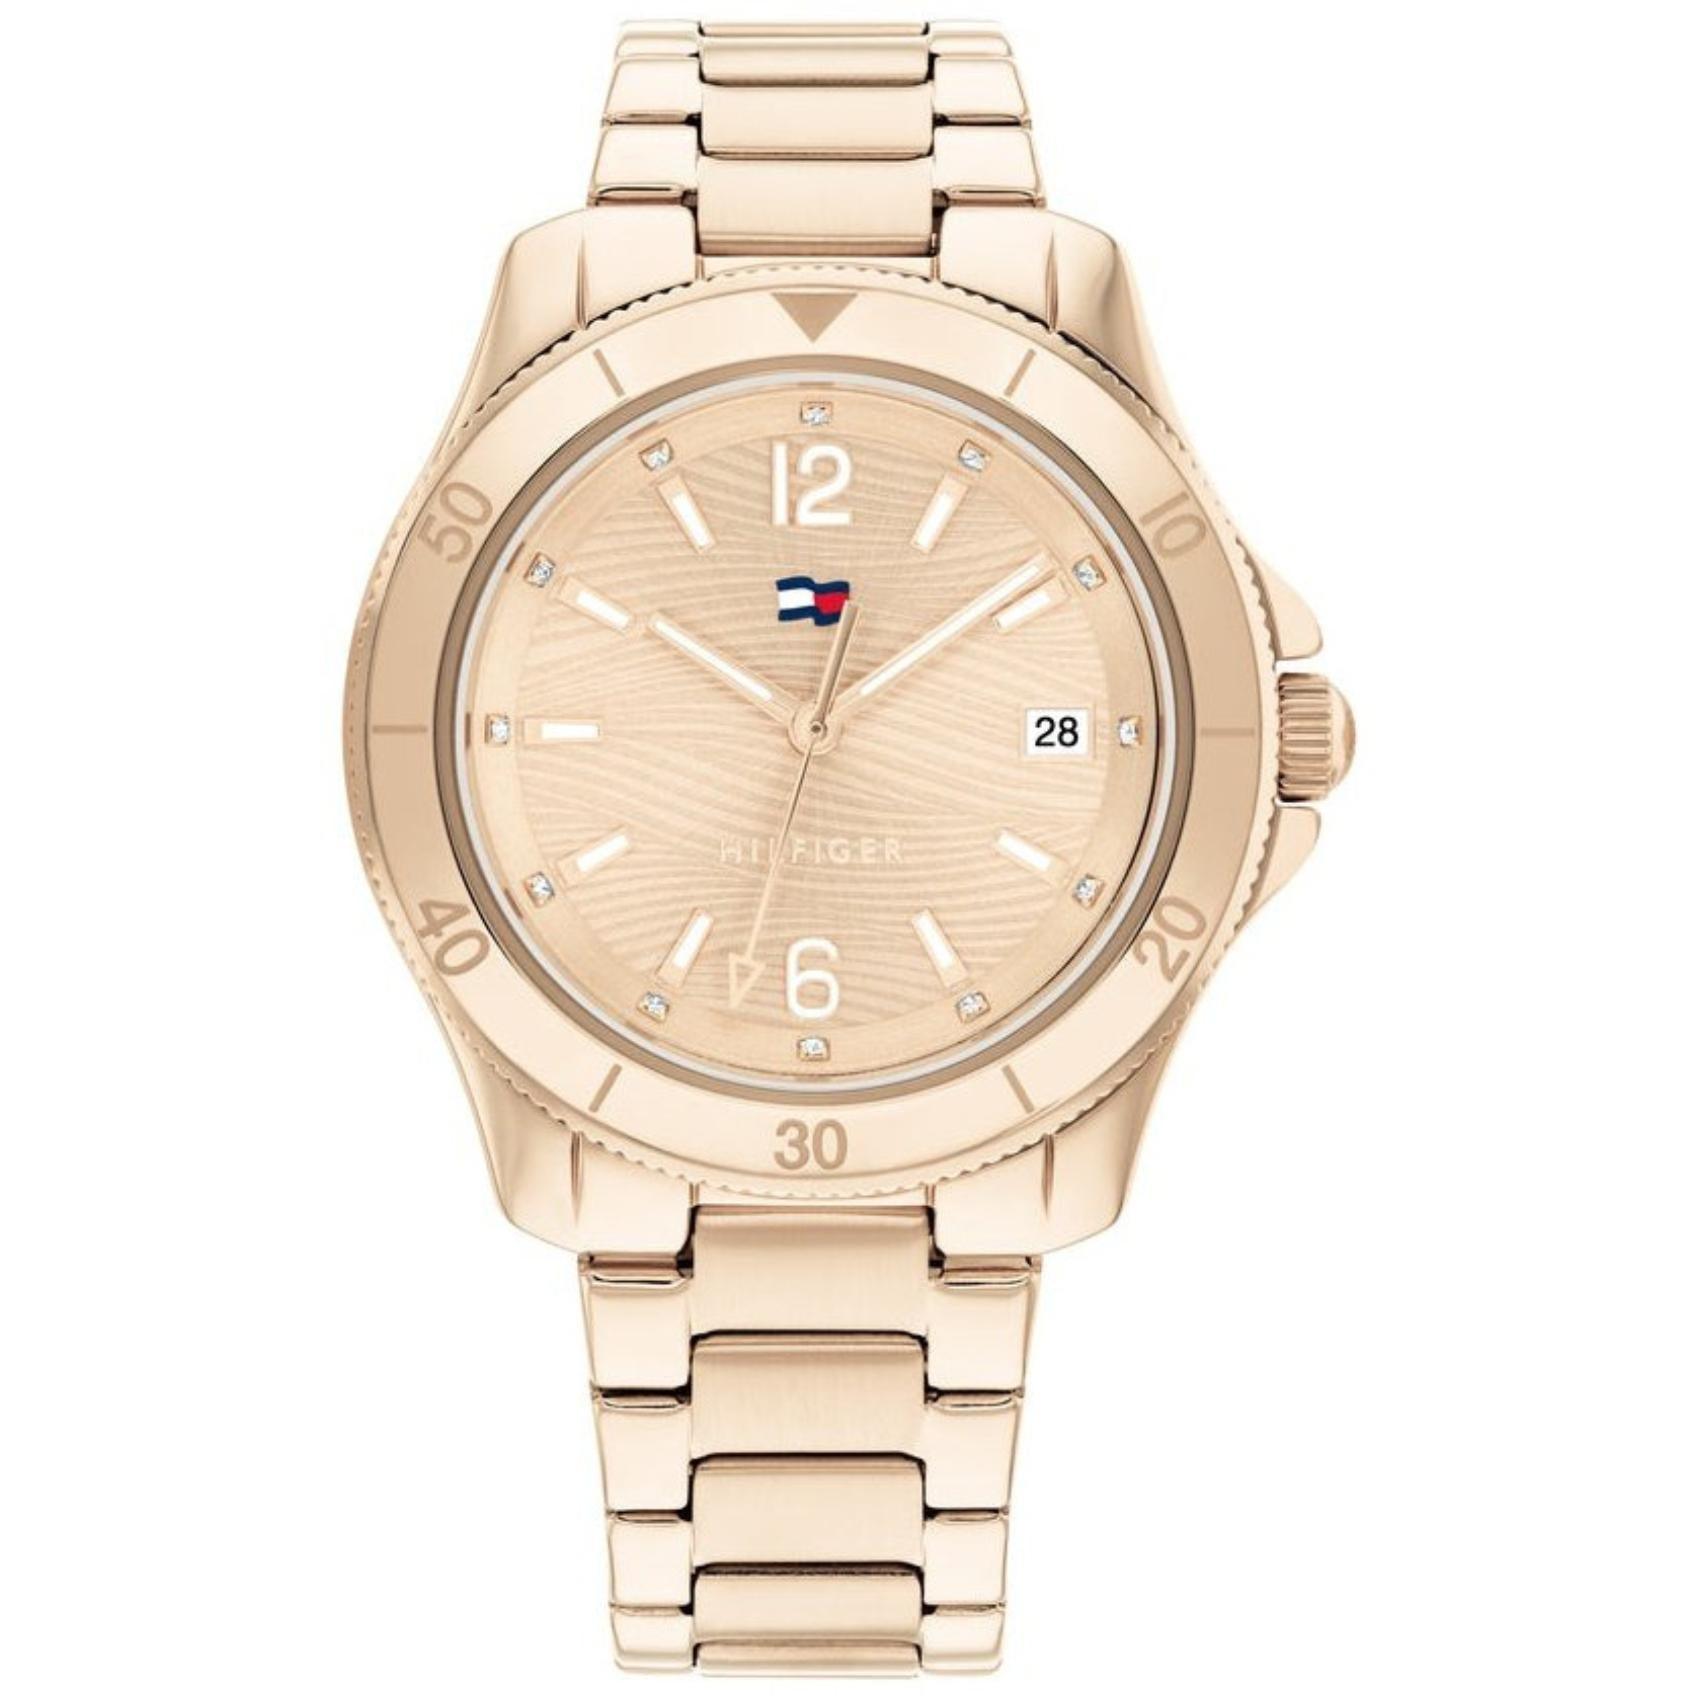 Γυναικείο ρολόι Tommy Hilfiger  Brooke 1782514 με ροζ χρυσό ατσάλινο μπρασελέ και ροζ χρυσό καντράν διαμέτρου 36mm με ημερομηνία.